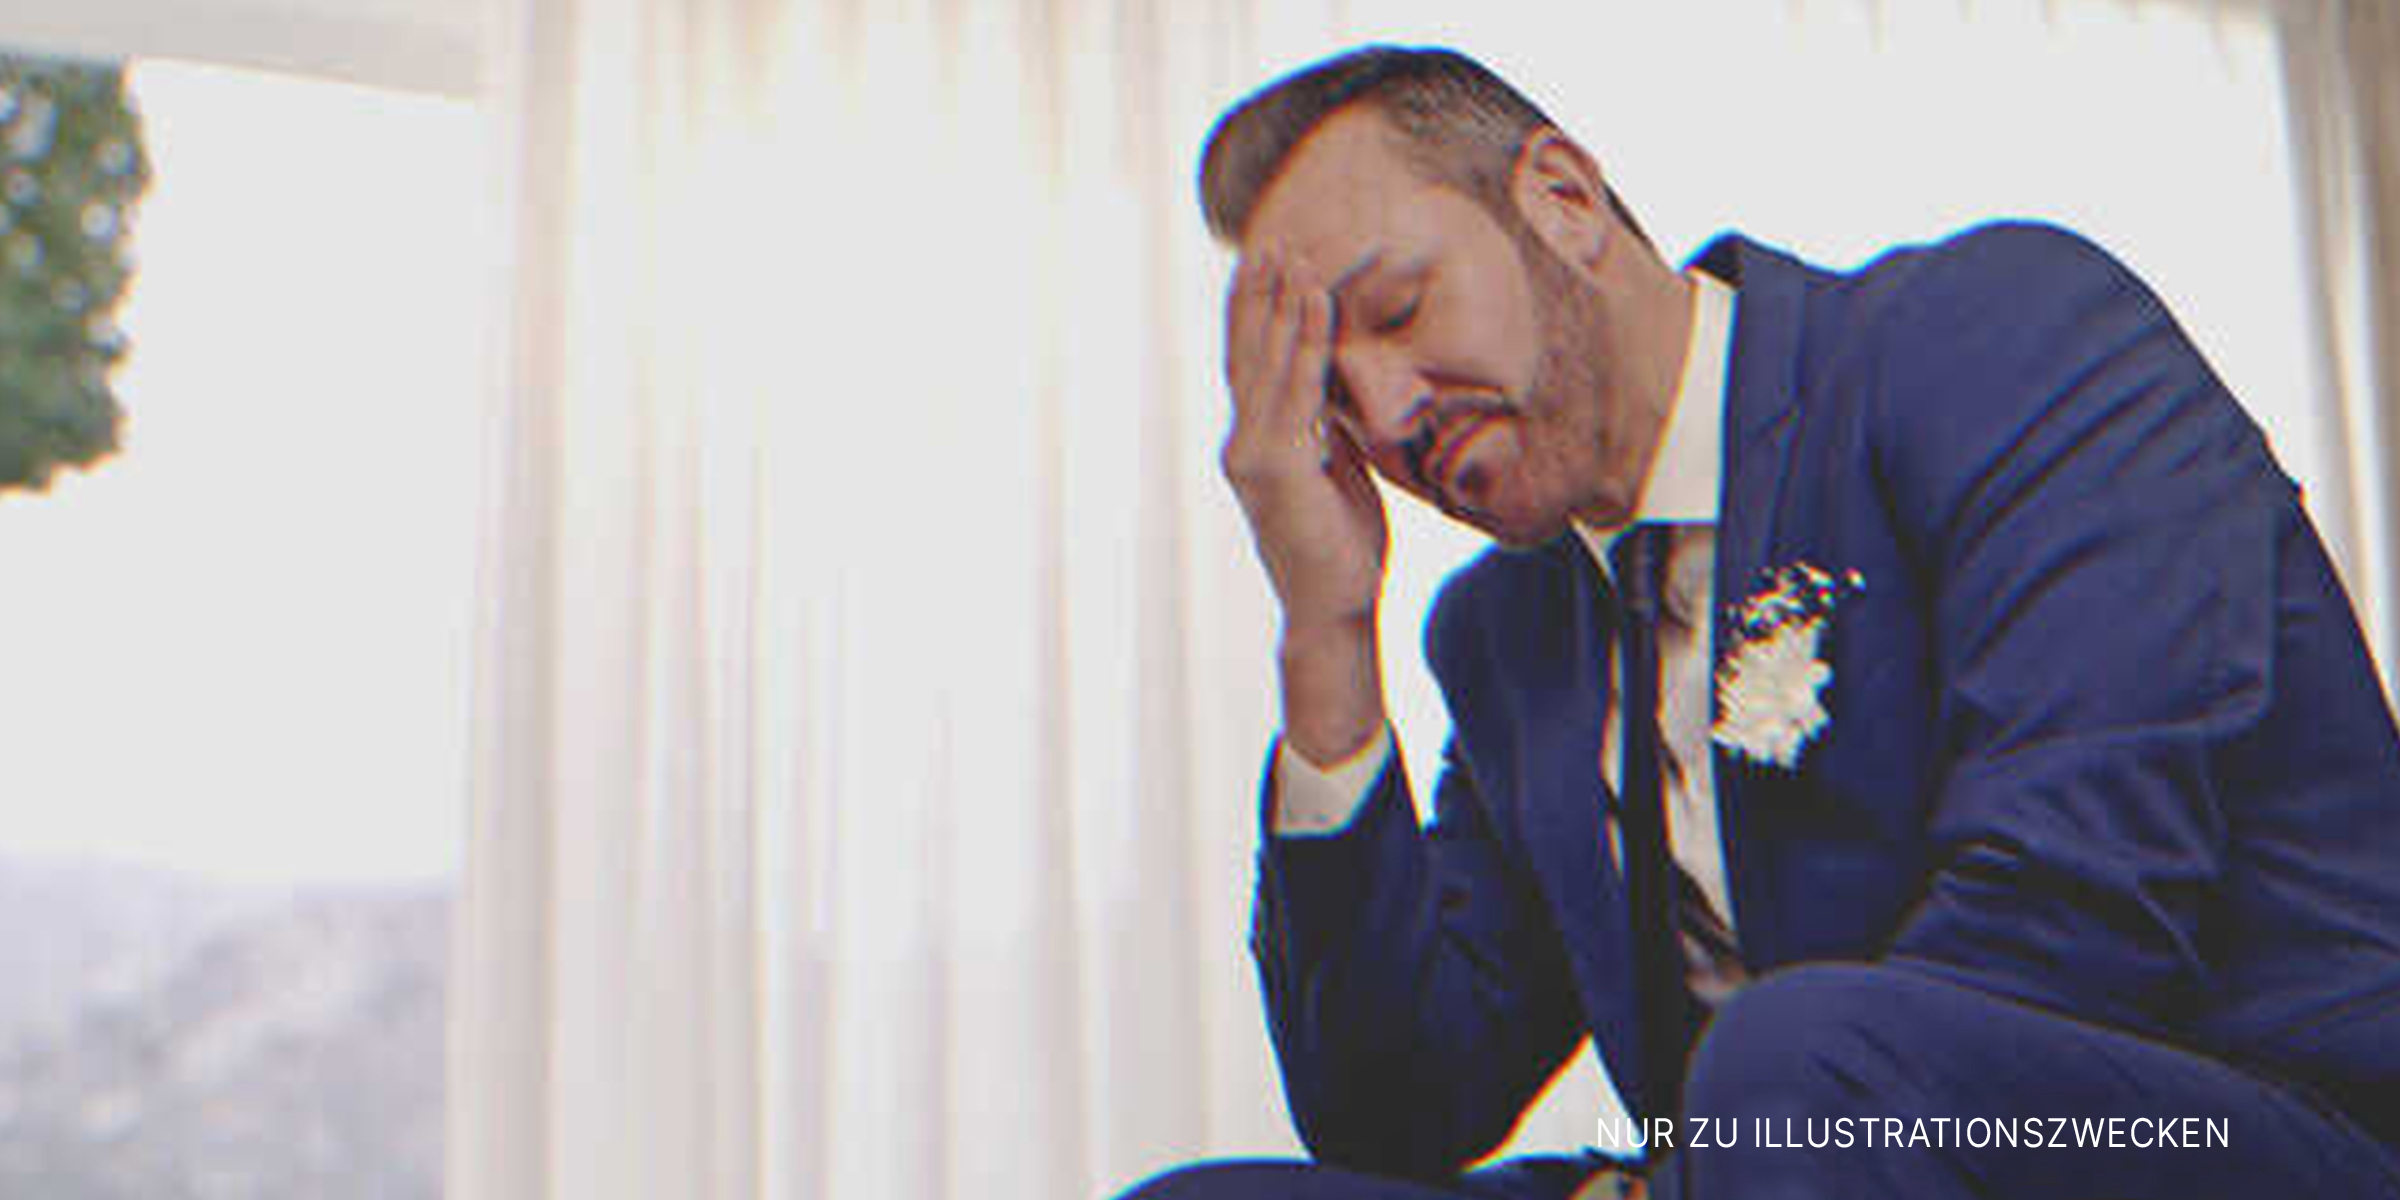 Der Bräutigam fasst sich frustriert an den Kopf. | Quelle: Getty Images